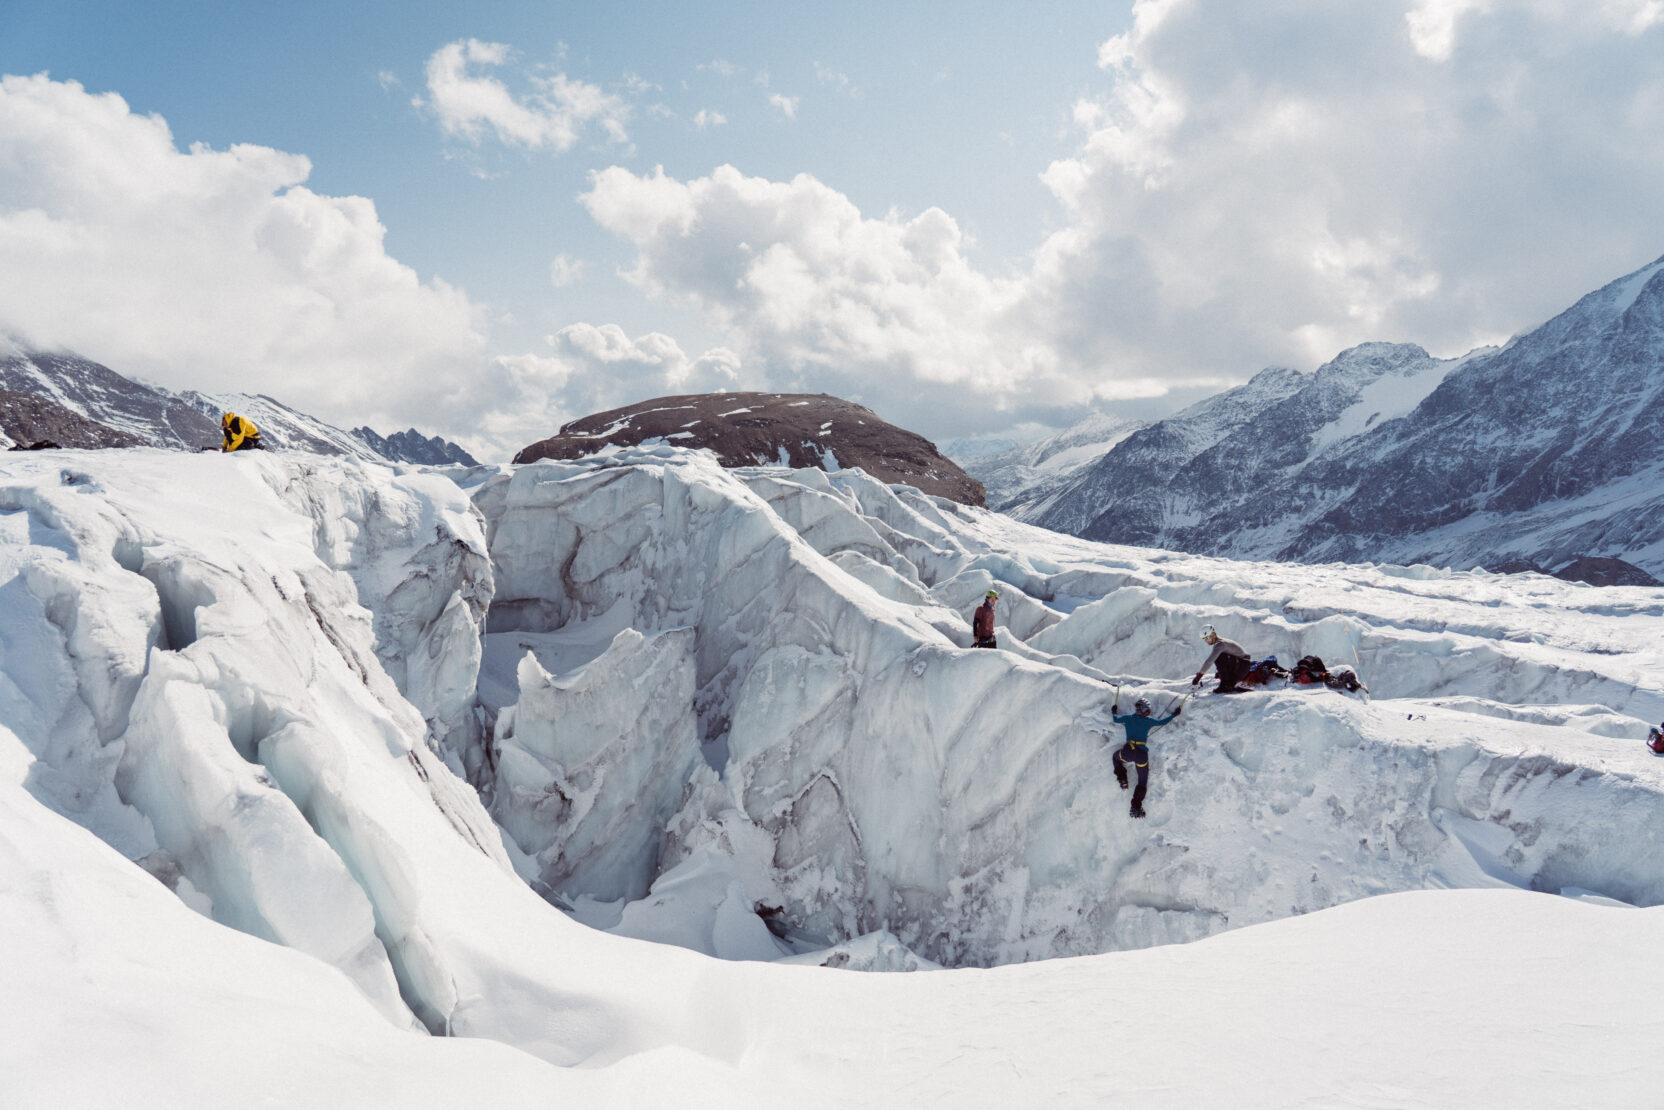 Z turisty horolezcem: Poprvé na ledovci